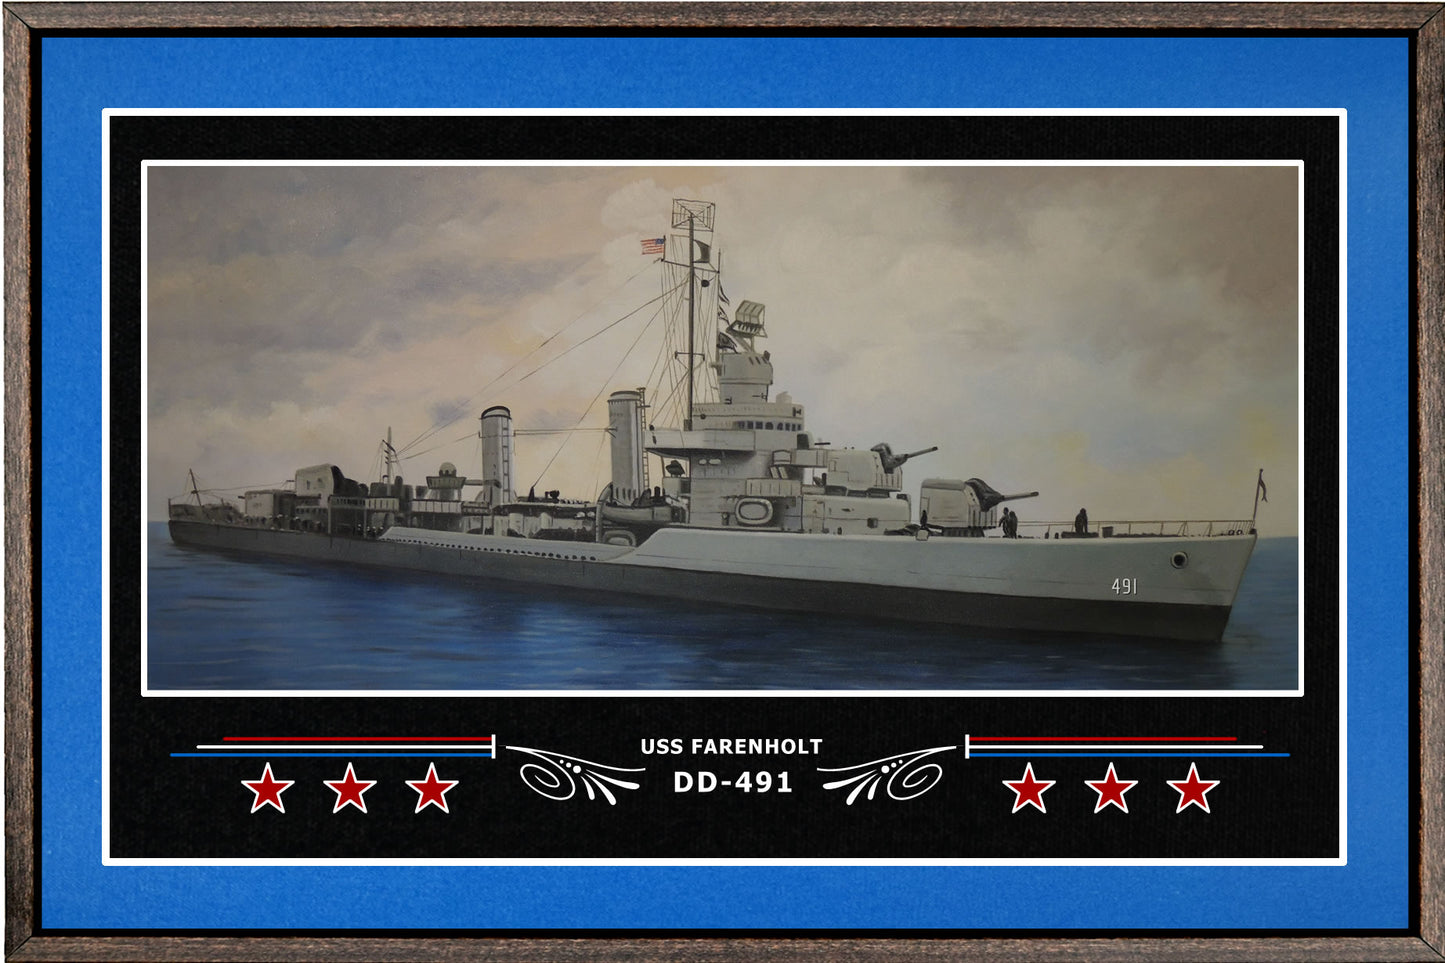 USS FARENHOLT DD 491 BOX FRAMED CANVAS ART BLUE